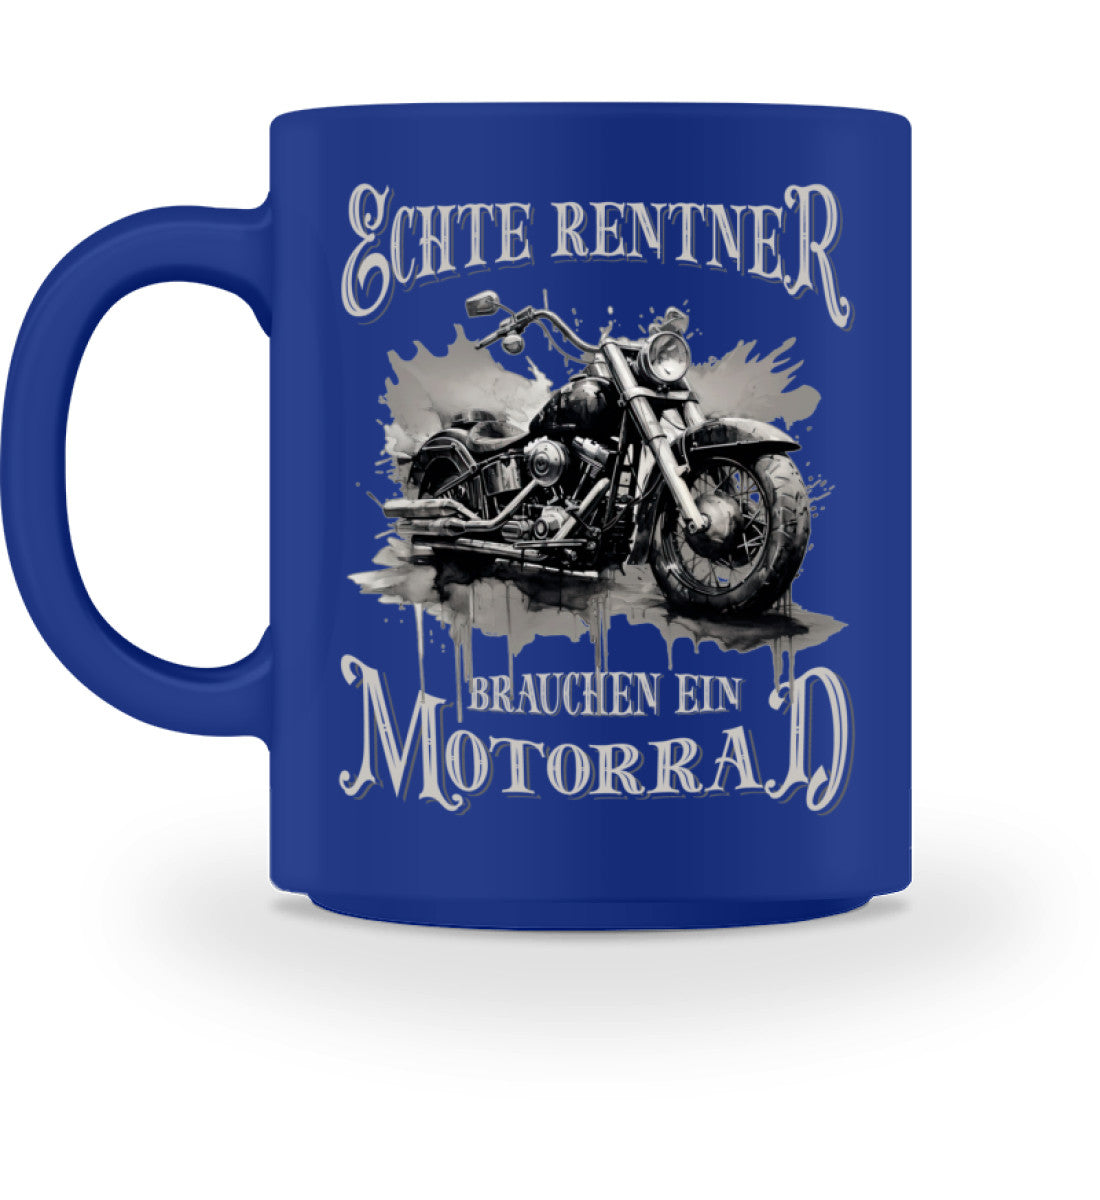 Eine Tasse für Motorradfahrer von Wingbikers, mit dem beidseitigen Aufdruck, Echte Rentner brauchen ein Motorrad, in royal blau.